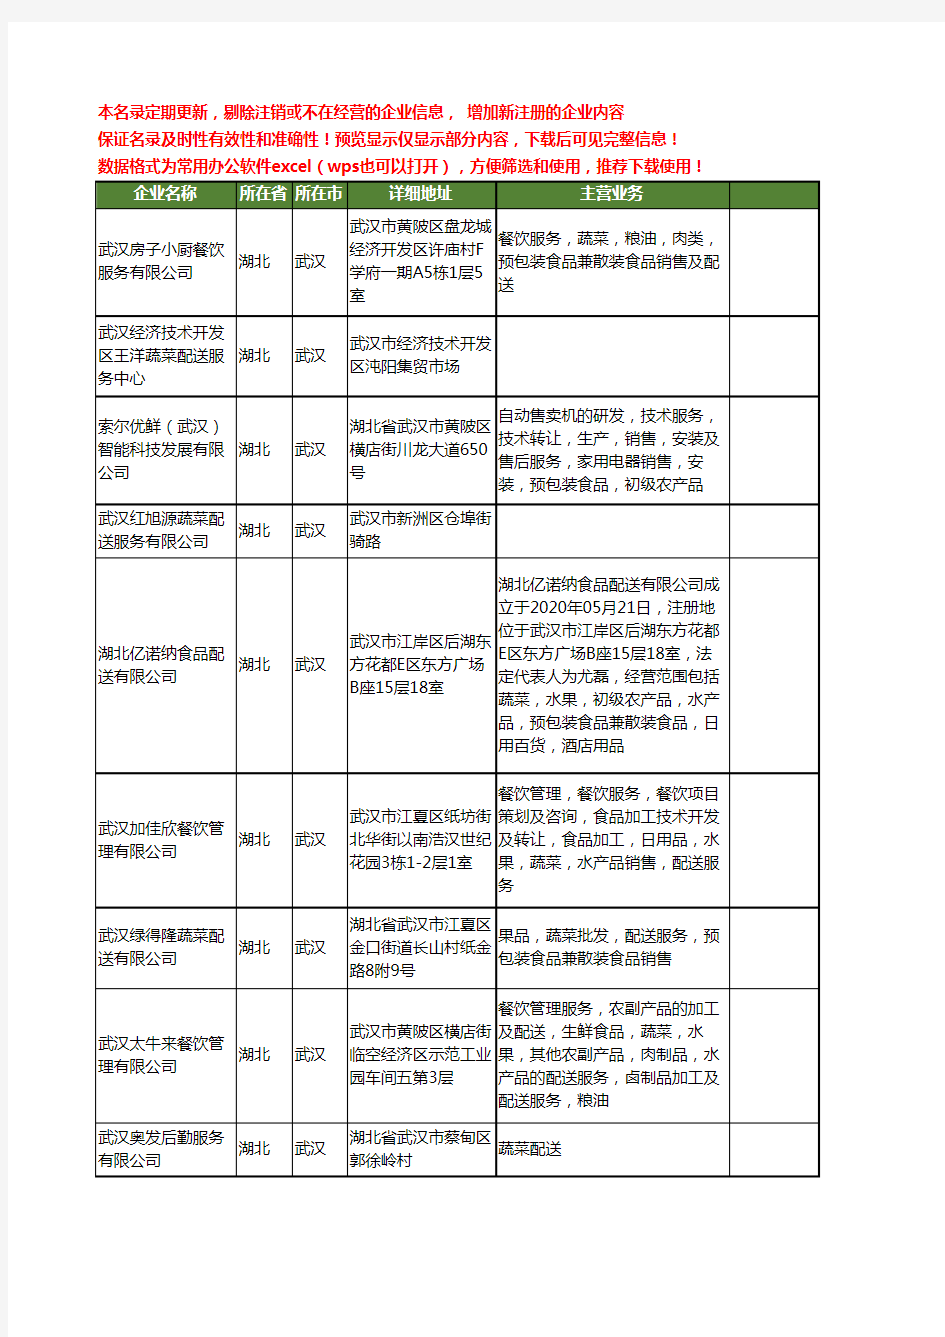 新版湖北省武汉蔬菜配送服务工商企业公司商家名录名单联系方式大全19家